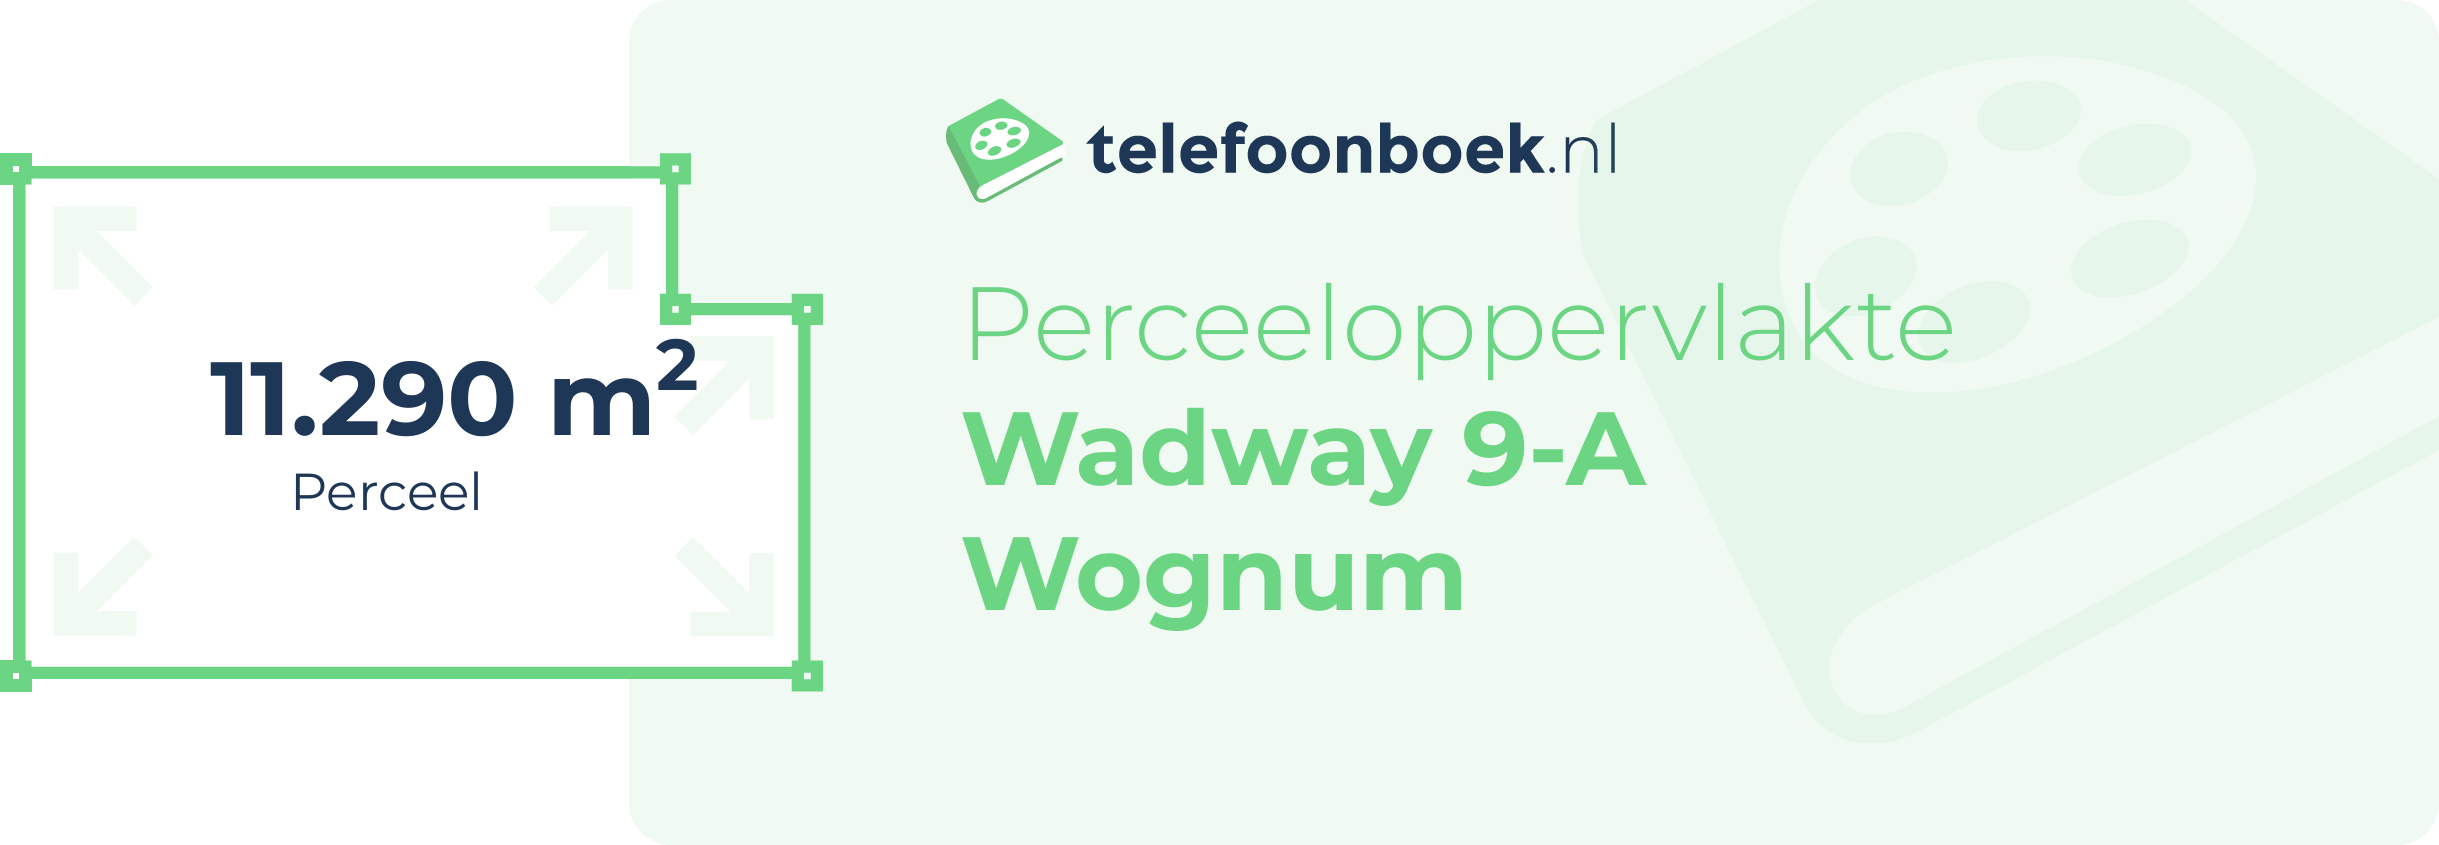 Perceeloppervlakte Wadway 9-A Wognum